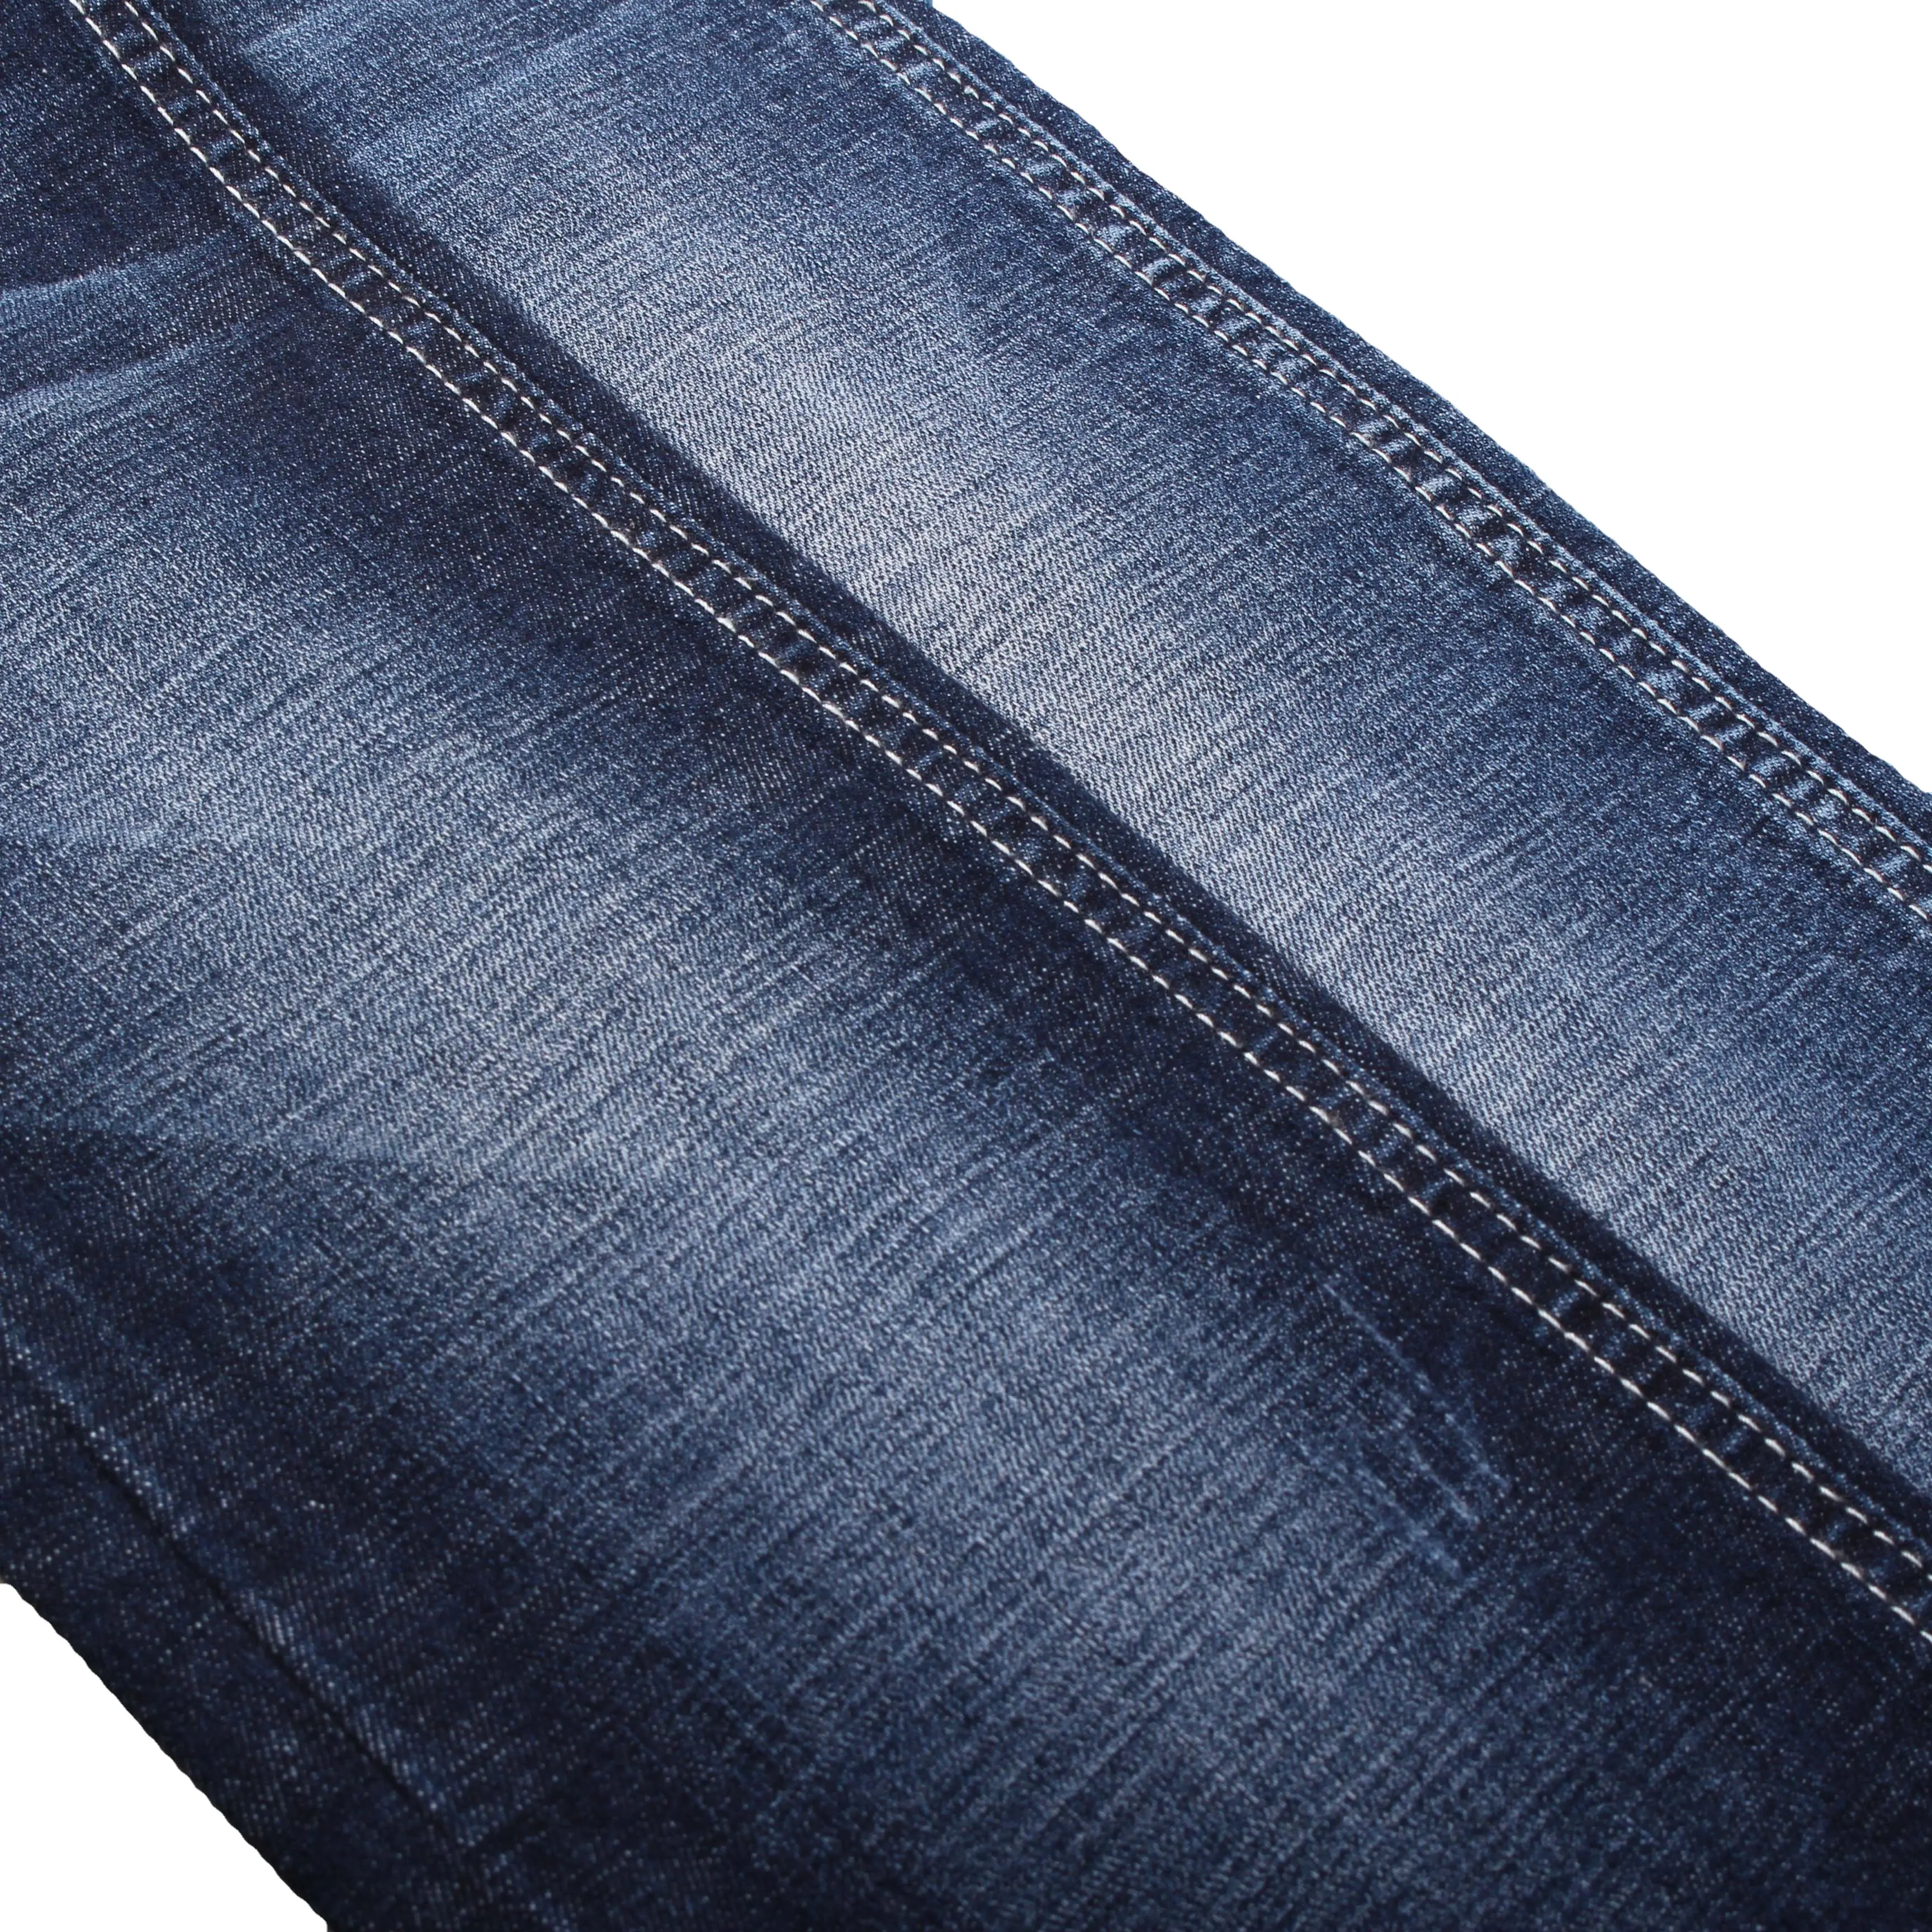 Fabricant d'usine pour le tissu de jeans en denim stretch en coton lycra avec hachures croisées slub